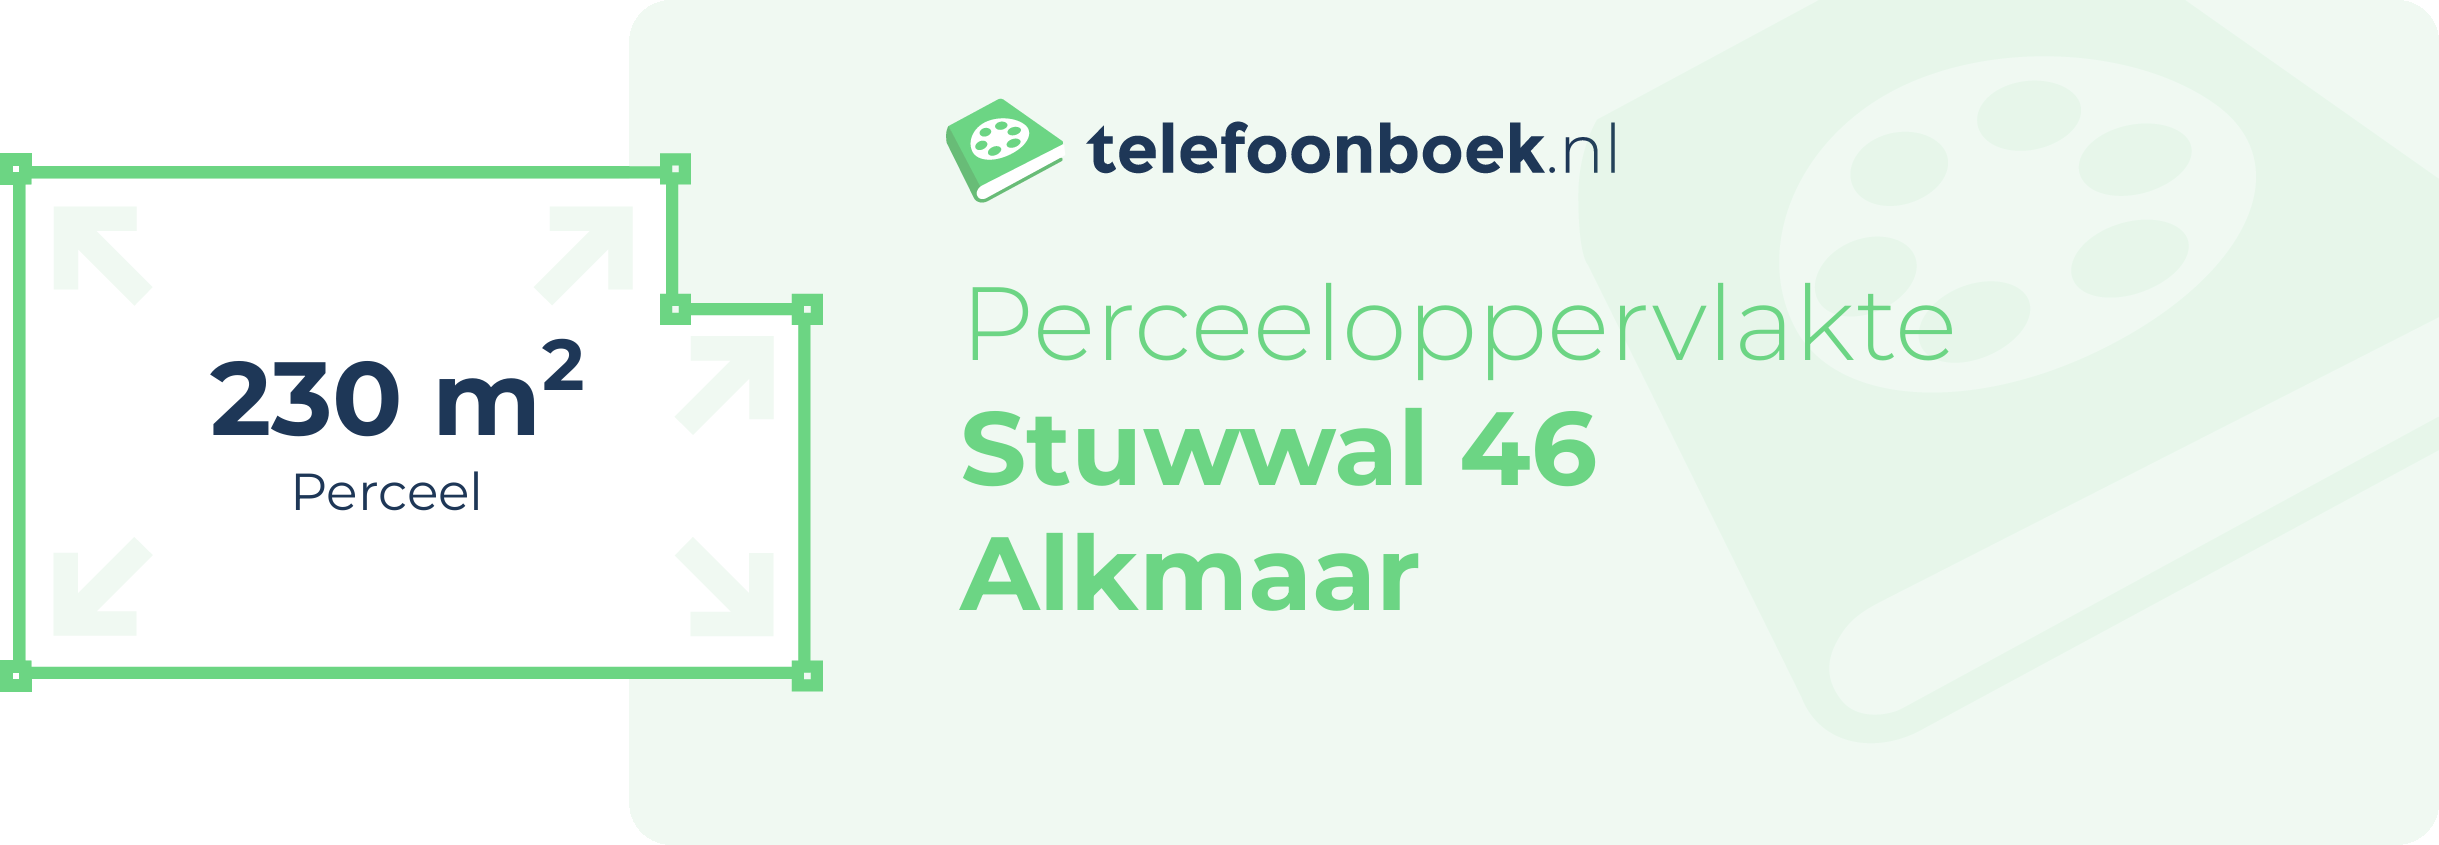 Perceeloppervlakte Stuwwal 46 Alkmaar